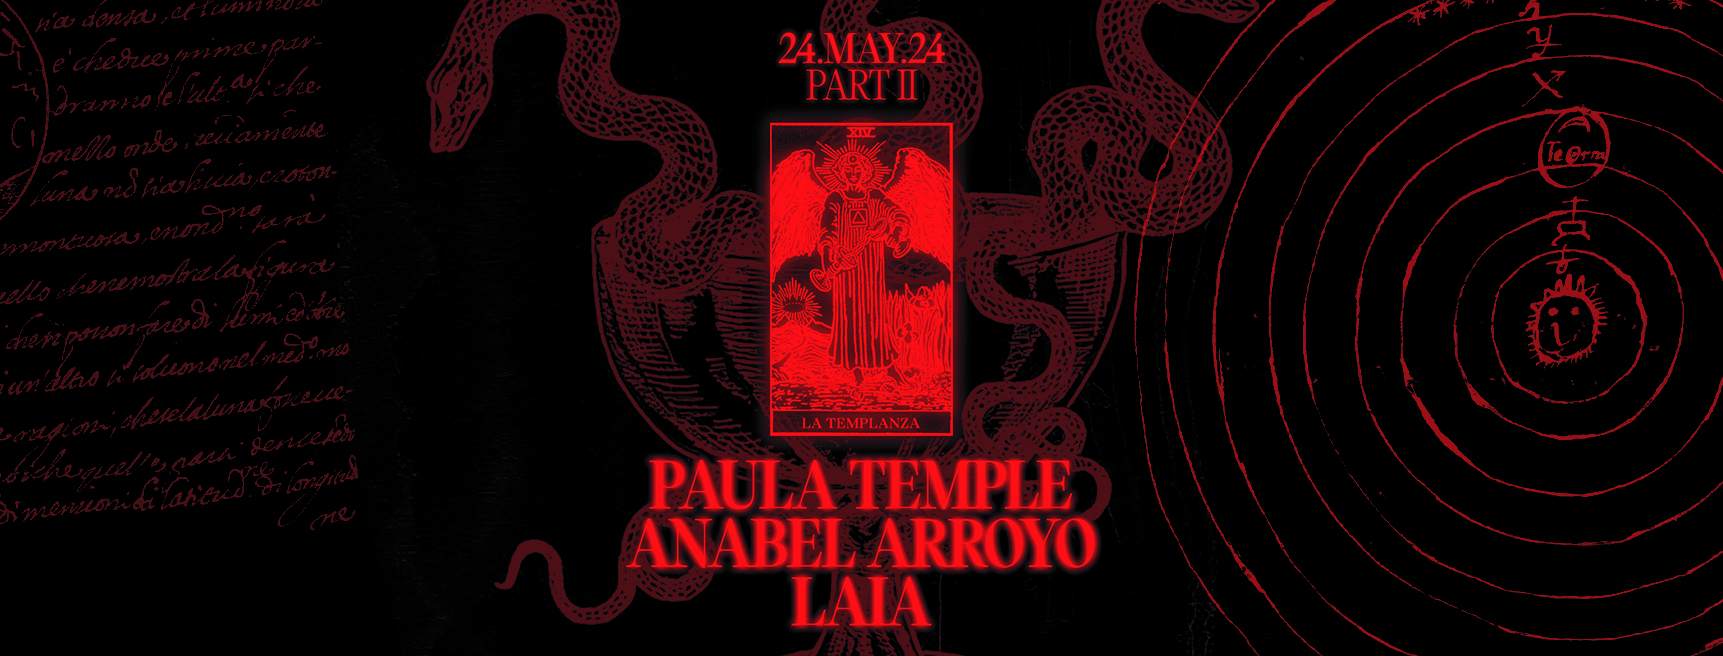 Laster presenta LA TRILOGÍA vol. II: Paula Temple, Anabel Arroyo & LAIA - Página frontal